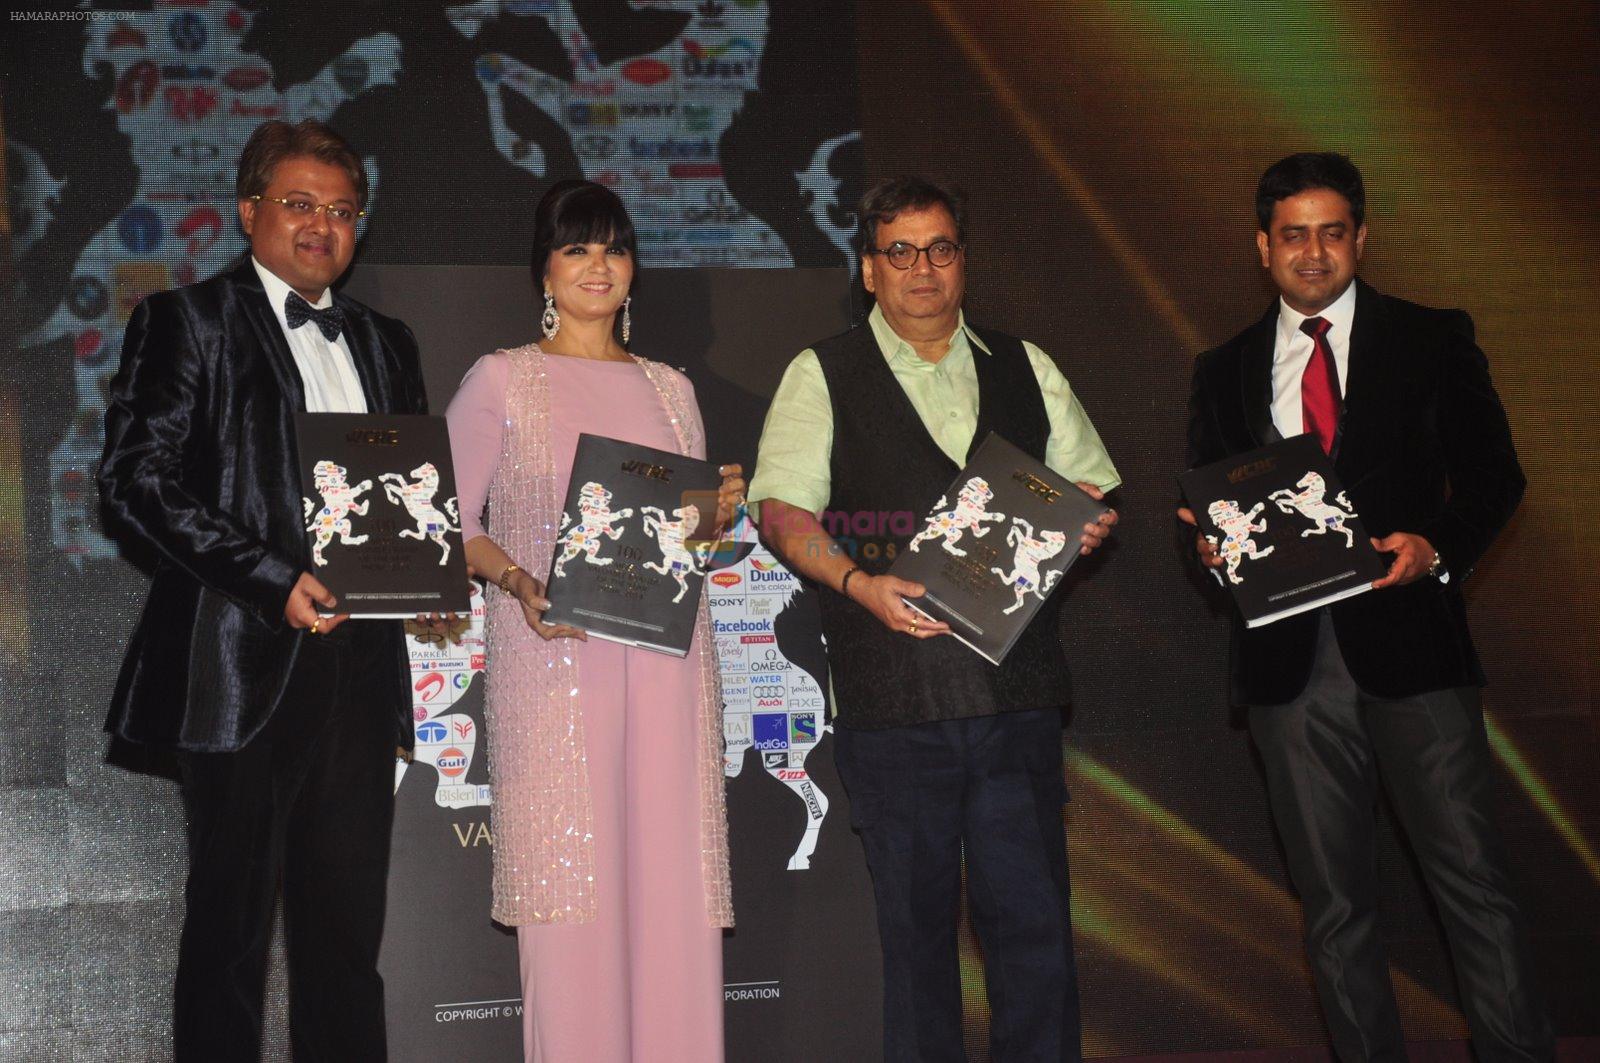 Neeta Lulla, Subhash Ghai at the Pride of India awards in Mumbai on 16th Dec 2014